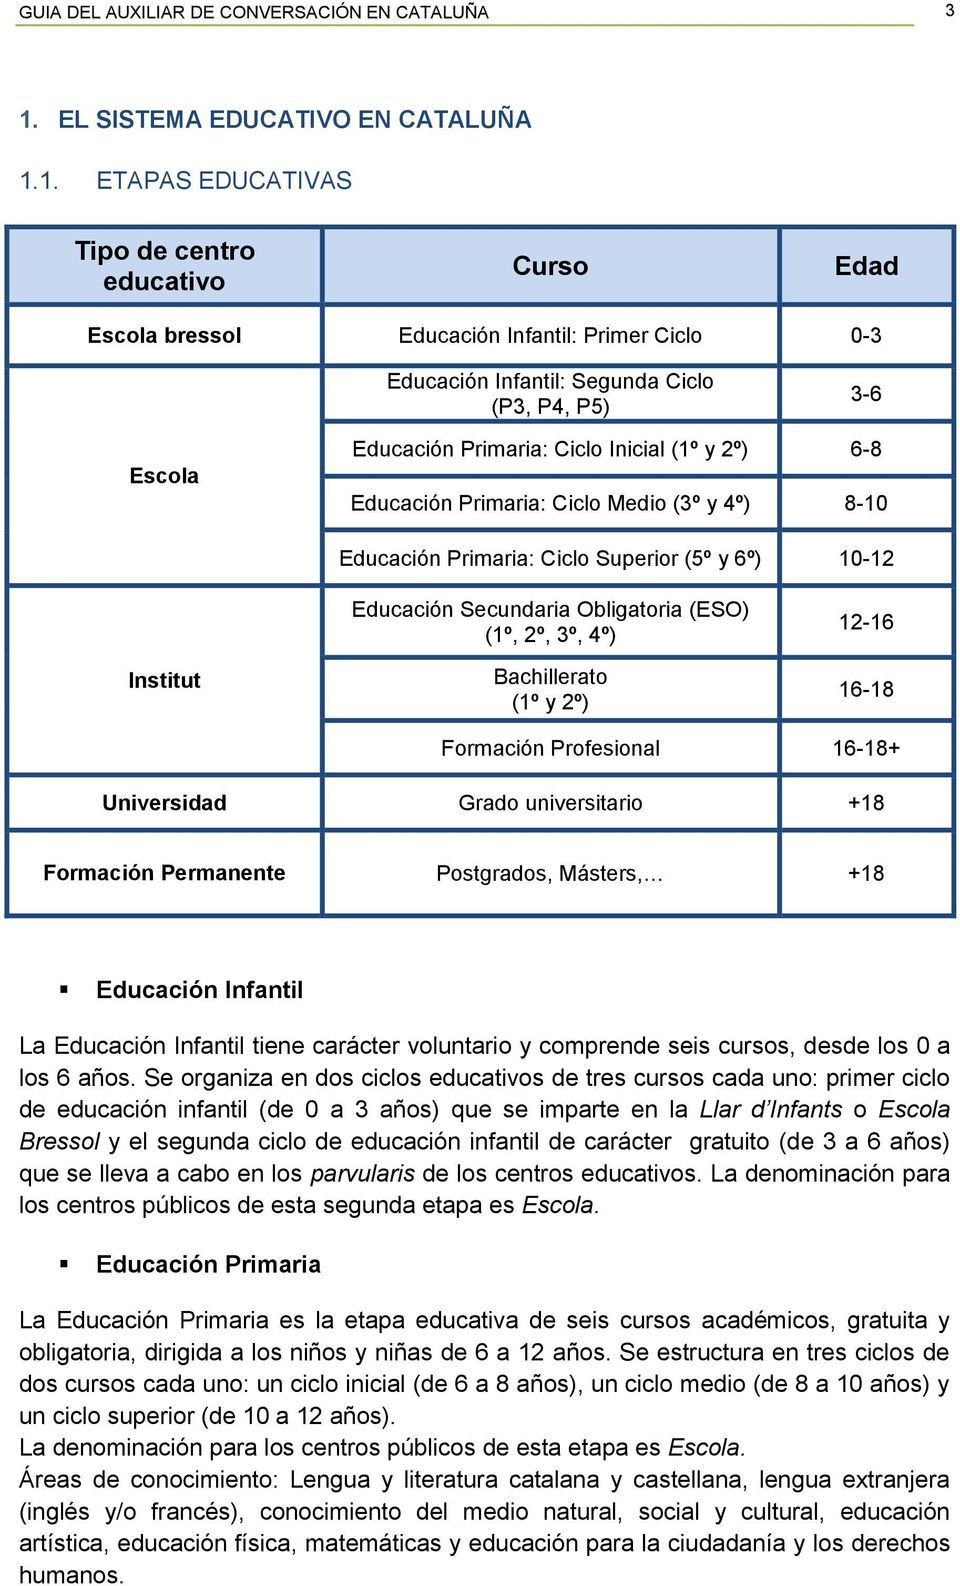 1. ETAPAS EDUCATIVAS Tipo de centro educativo Curso Edad Escola bressol Educación Infantil: Primer Ciclo 0-3 Educación Infantil: Segunda Ciclo (P3, P4, P5) 3-6 Escola Educación Primaria: Ciclo